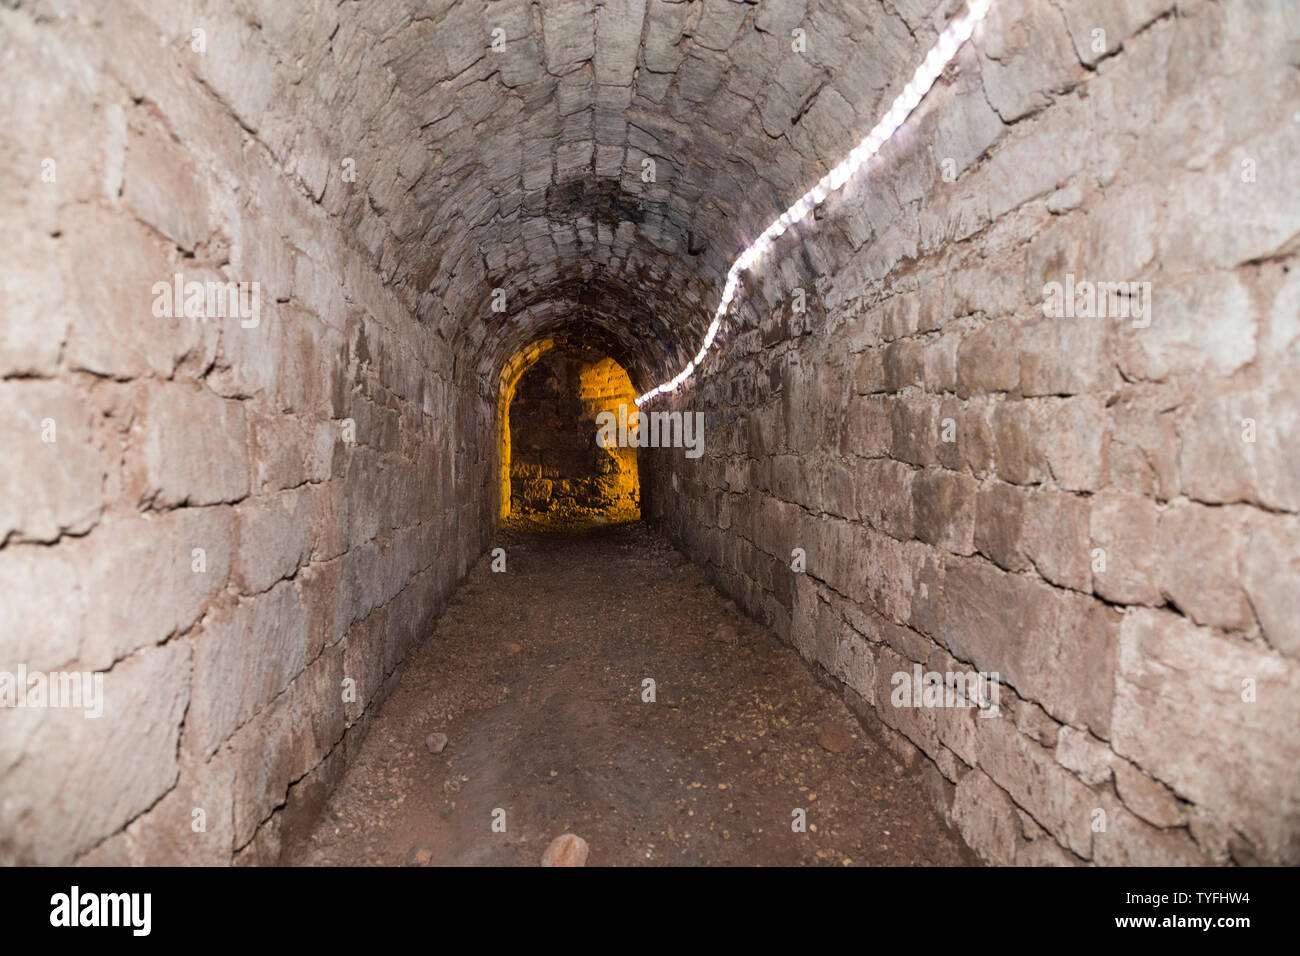 Blick auf die schmale Passage, dass die Exeter unterirdischen Gänge und Tunnel Netzwerk der alten Schnitt und Abdeckung Tunnel bildet. Exeter. Großbritannien (109) Stockfoto